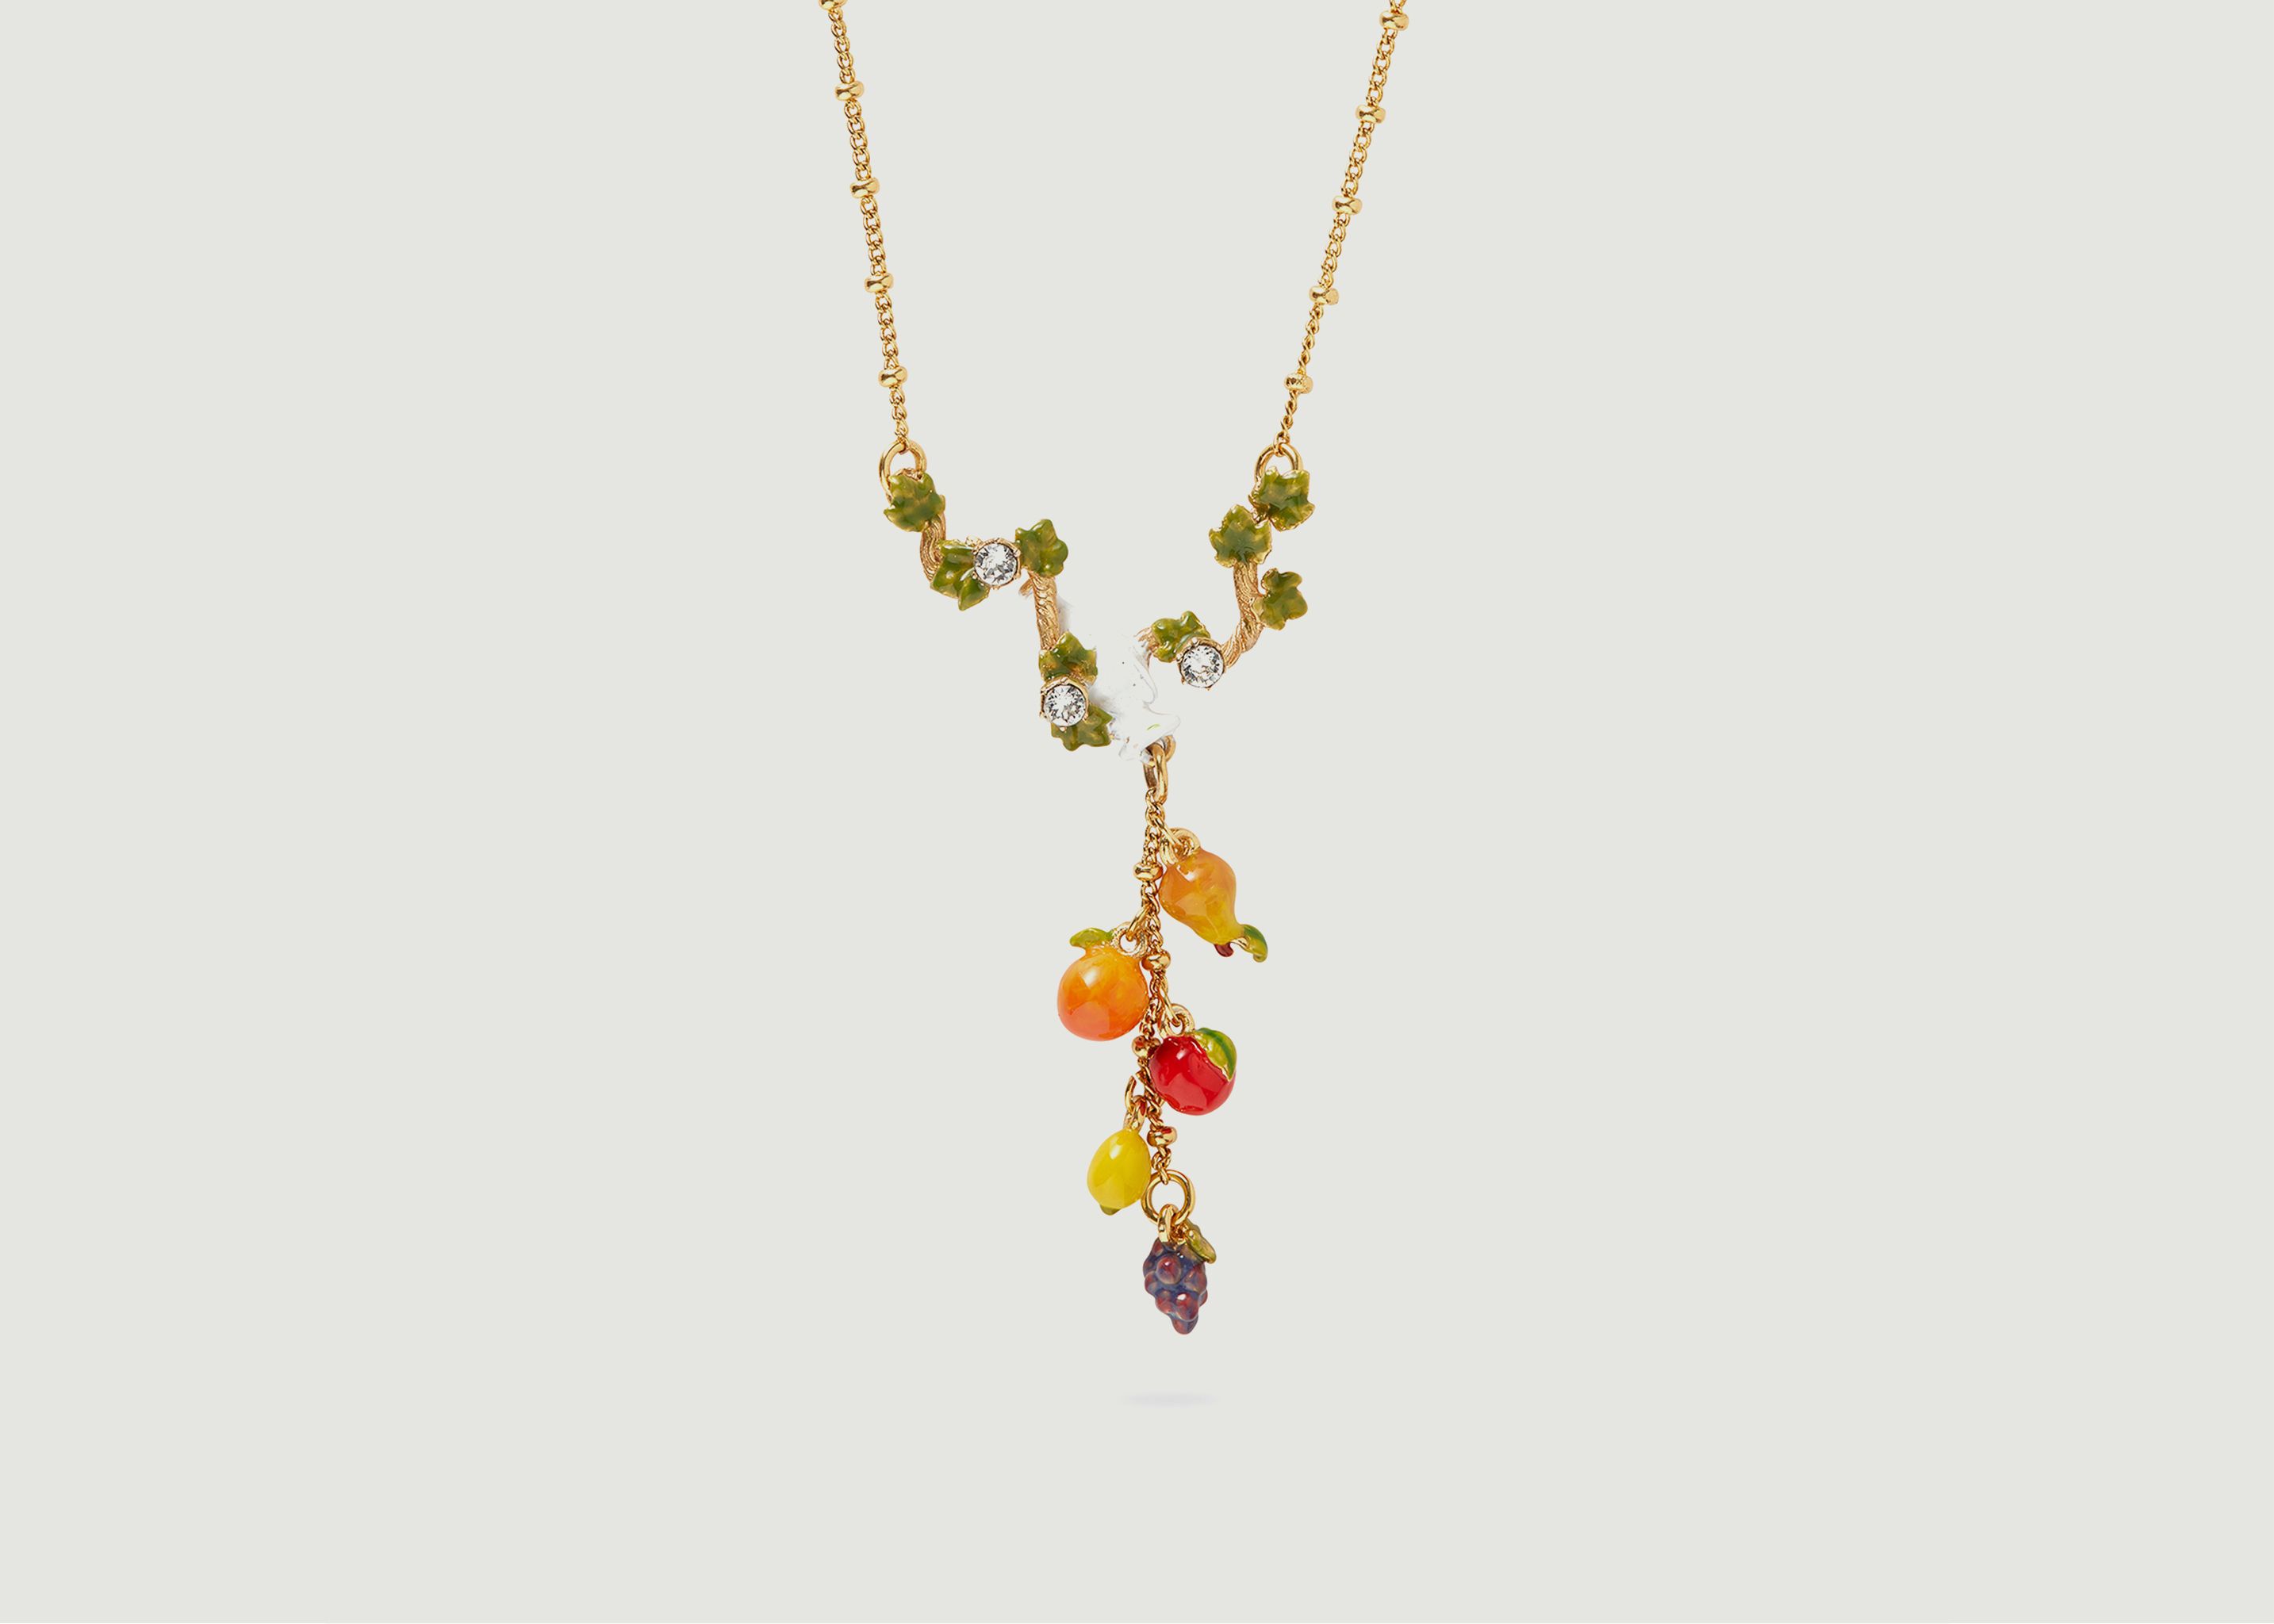 Collier fin avec pendentif amphore, feuilles de vigne et fruits - Les Néréides